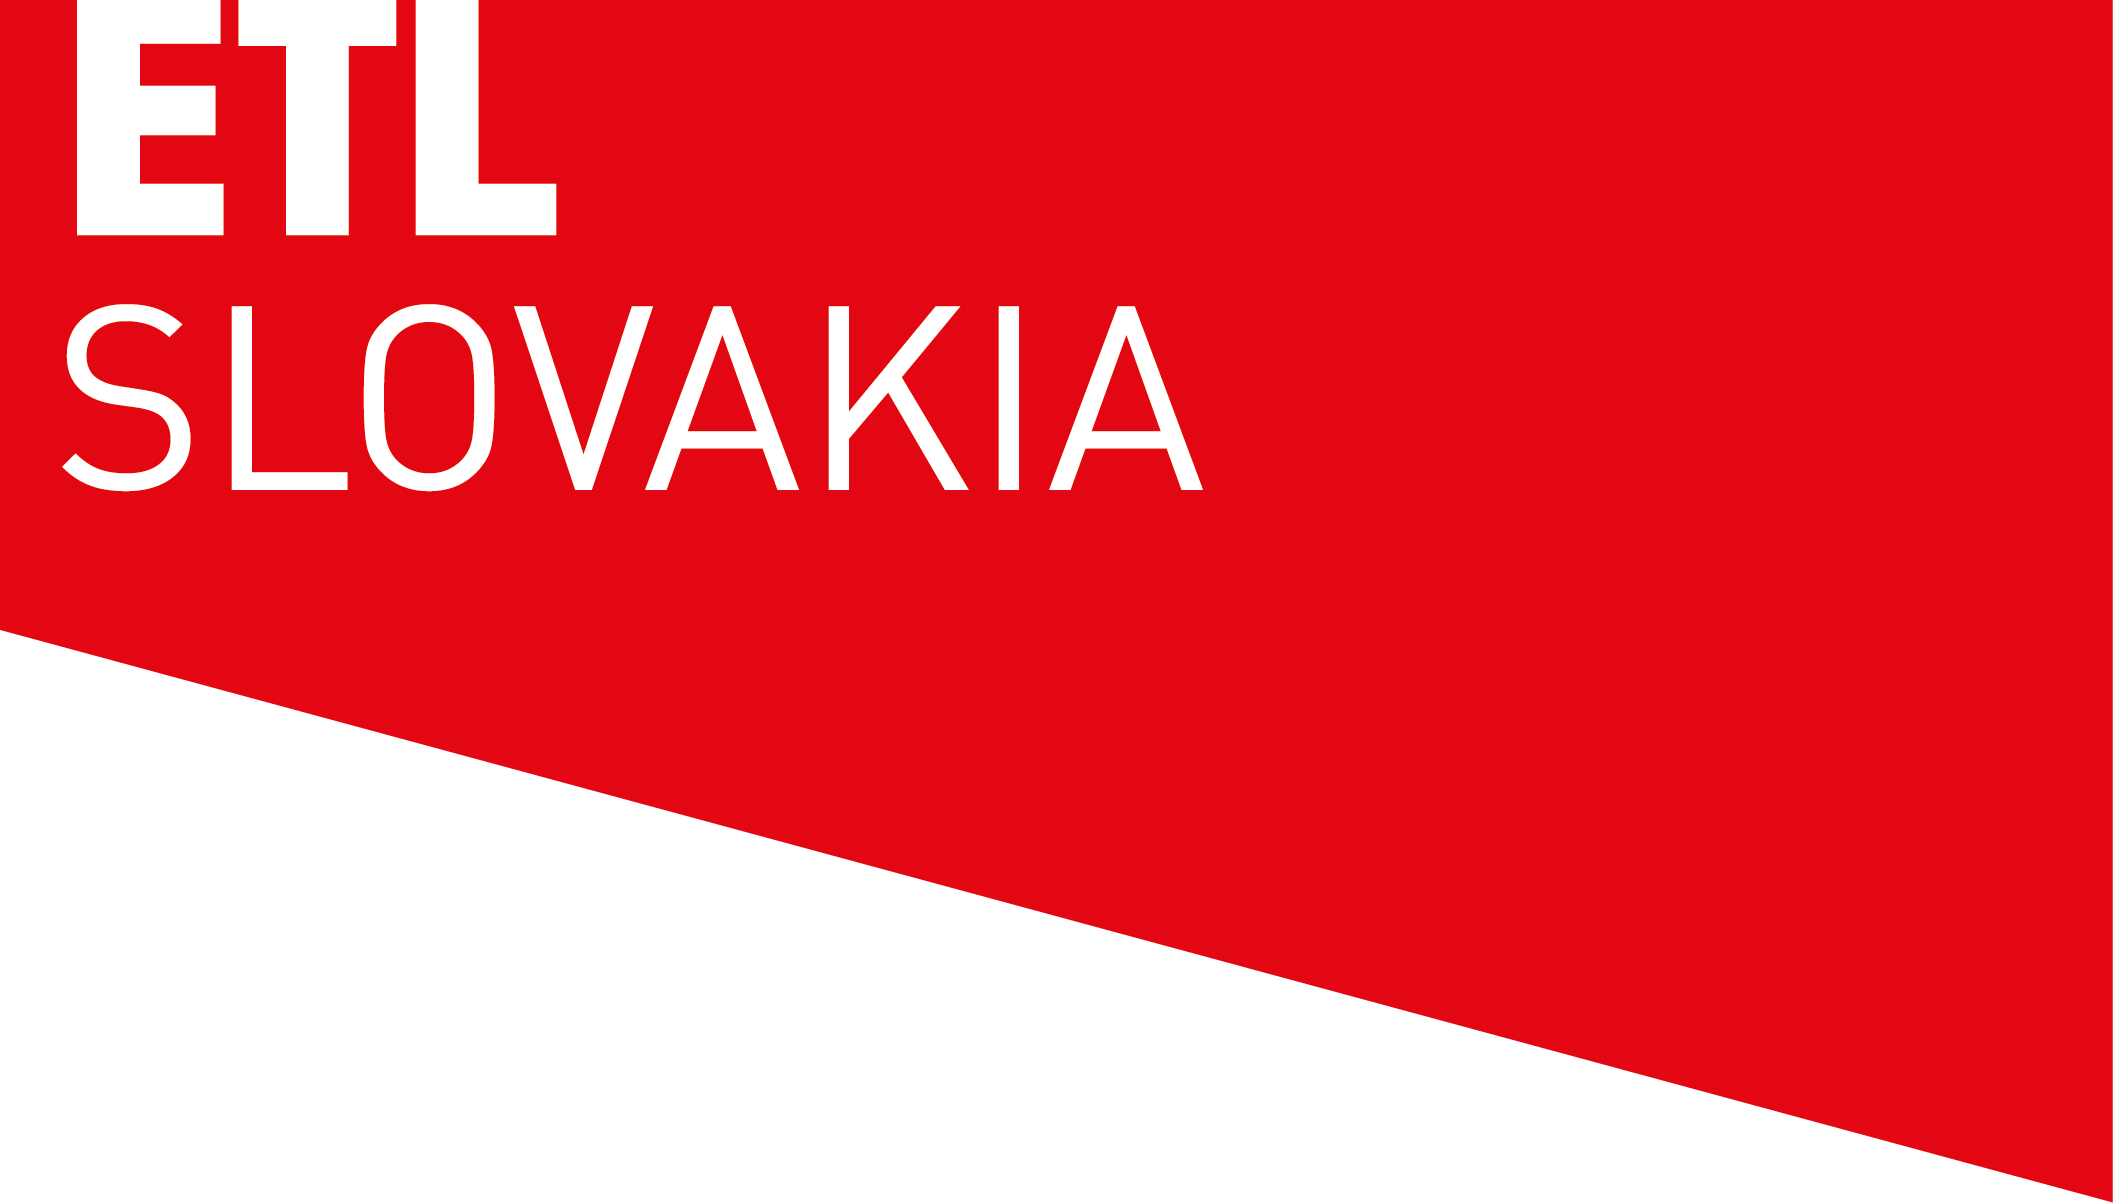 ETL Slovakia